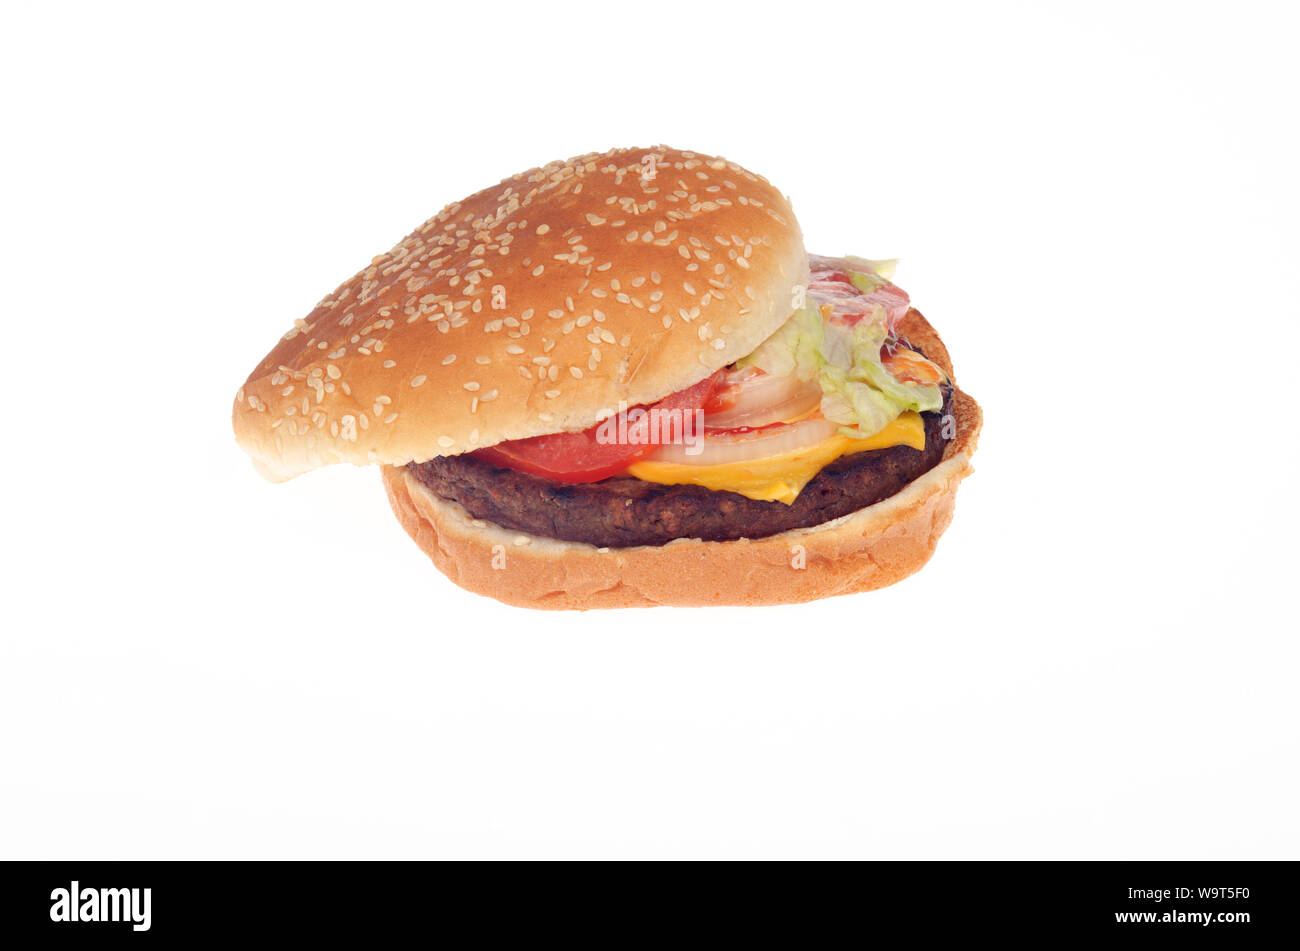 Burger King Whopper impossible avec un fromage aliments végétariens patty à base de plantes Banque D'Images